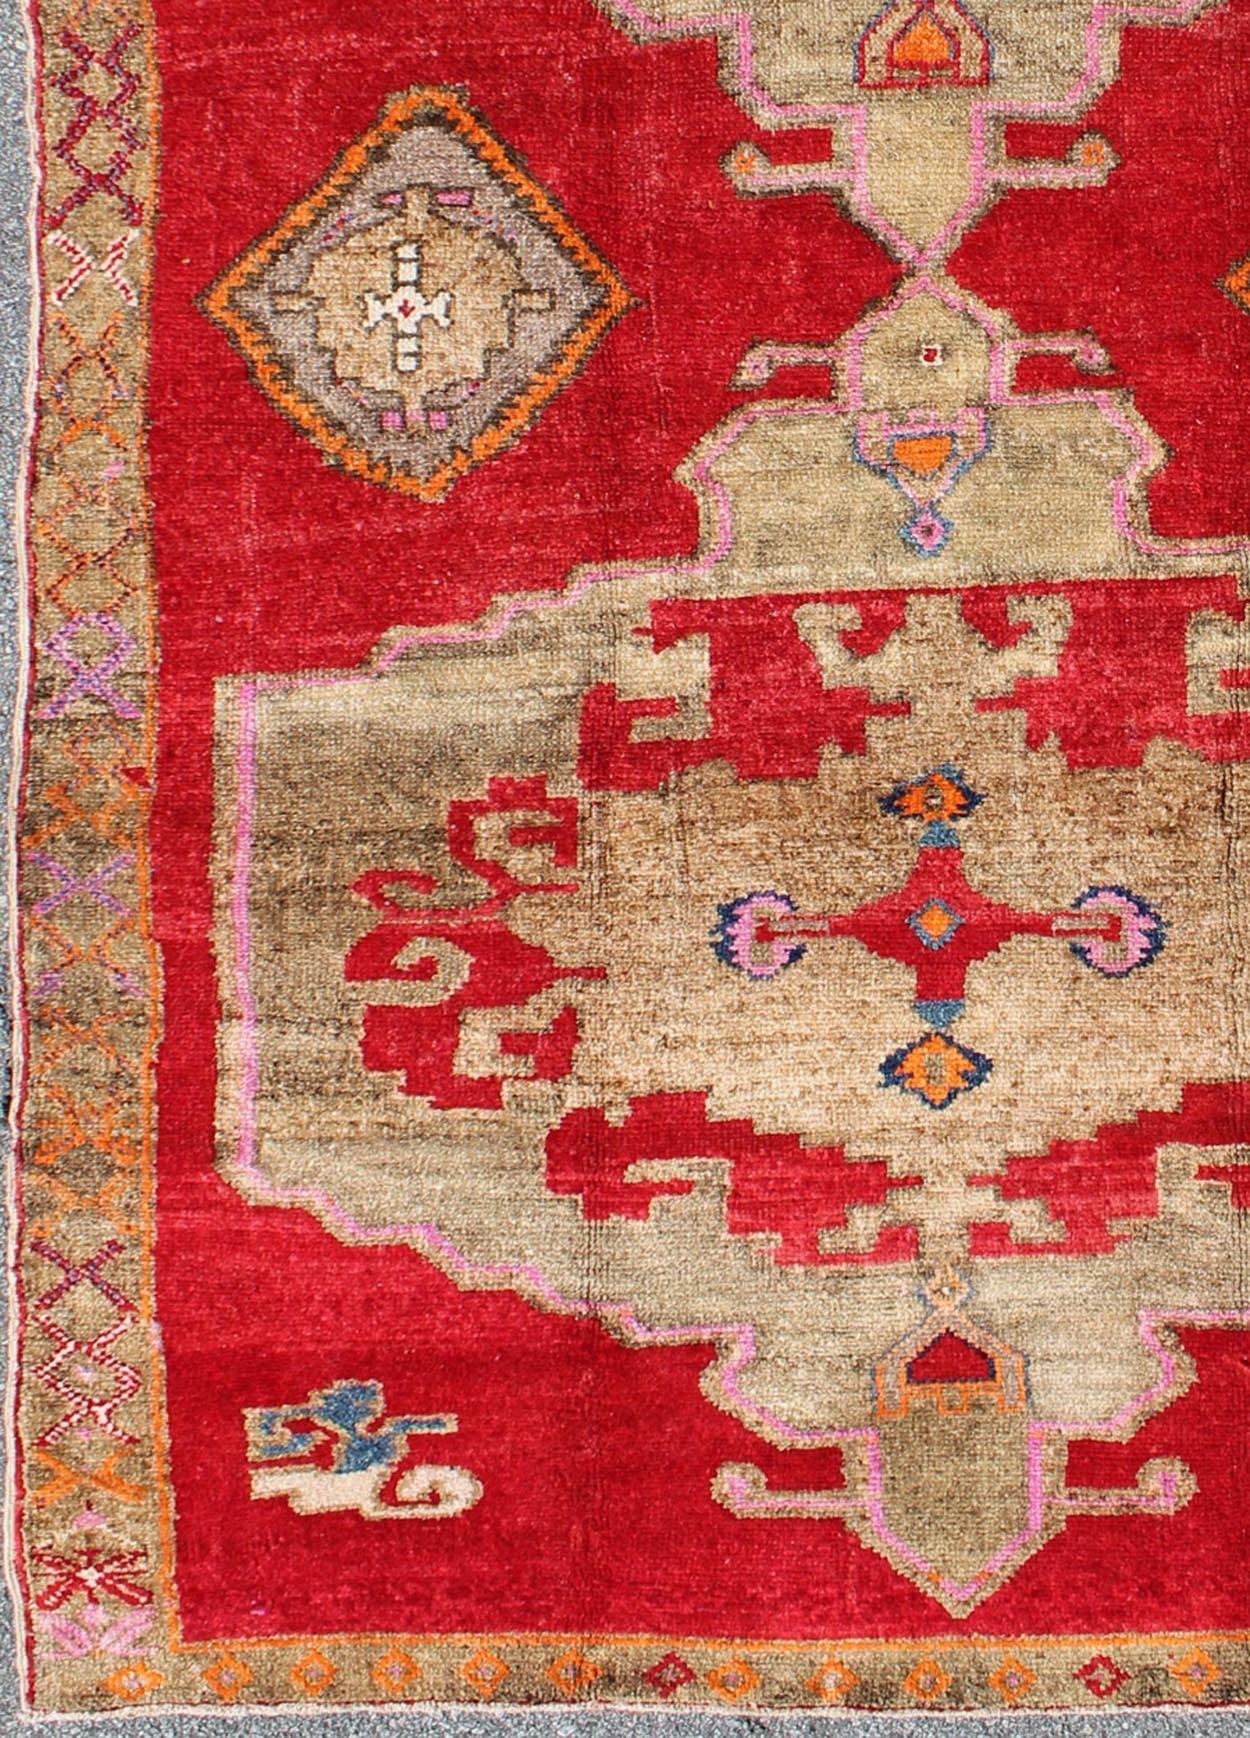 Maße: 5'11'' x 10'4''.
Dieser türkische Teppich zeichnet sich durch ein doppeltes zentrales Medaillonmuster sowie durch Muster aus kleineren subgeometrischen Elementen in der Bordüre aus. Die Farben umfassen verschiedene Schattierungen von Rot,